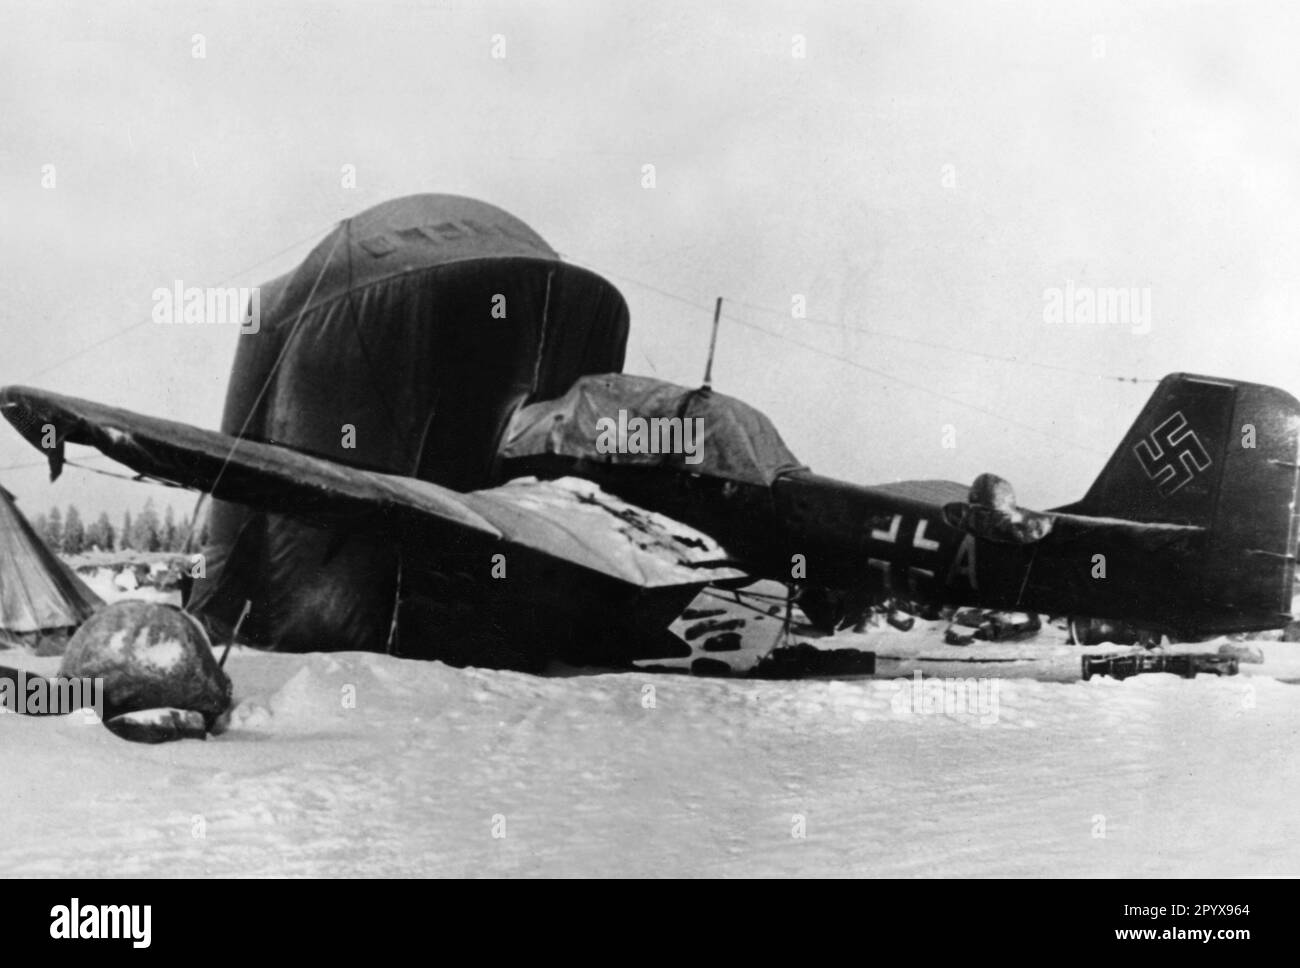 „Junkers Ju 87“ „Stuka“ auf einem Flugplatz in Nordfinnland. Stoffabdeckungen dienen dem Schutz des Flugzeugs vor eisiger Luft. Foto: Niermann. [Maschinelle Übersetzung]' Stockfoto